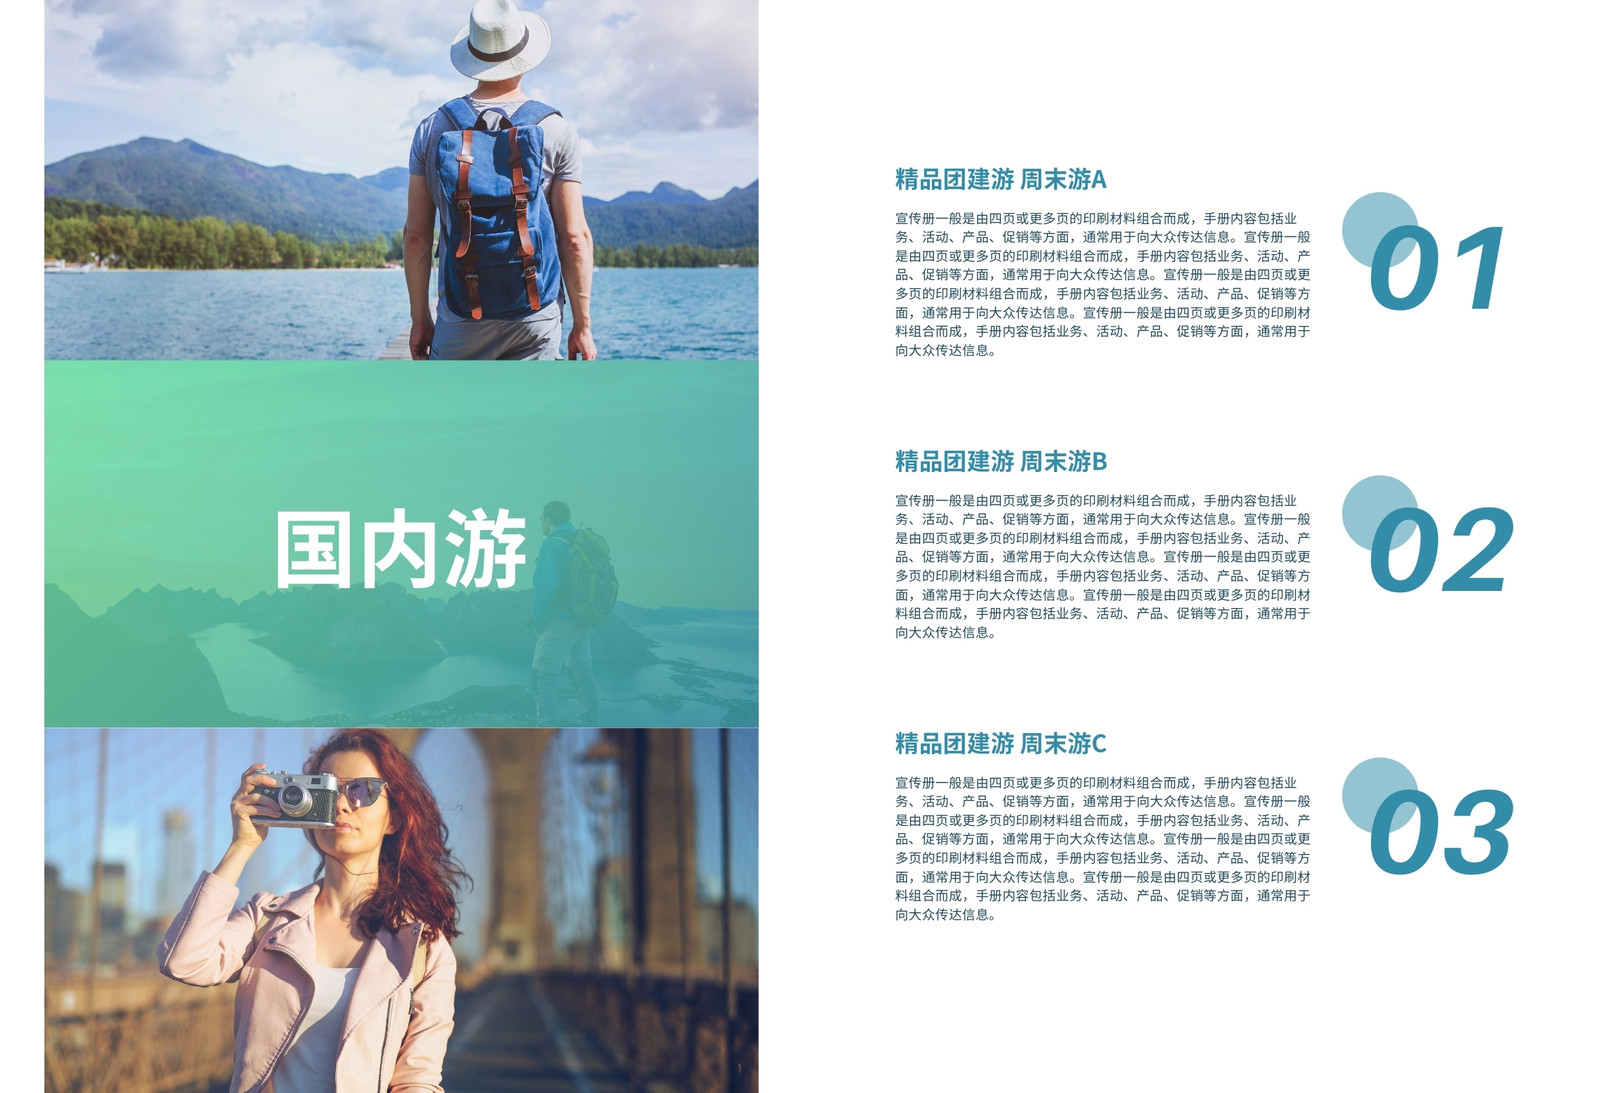 蓝绿色旅游景色照片现代旅游宣传中文宣传册 模板 canva可画